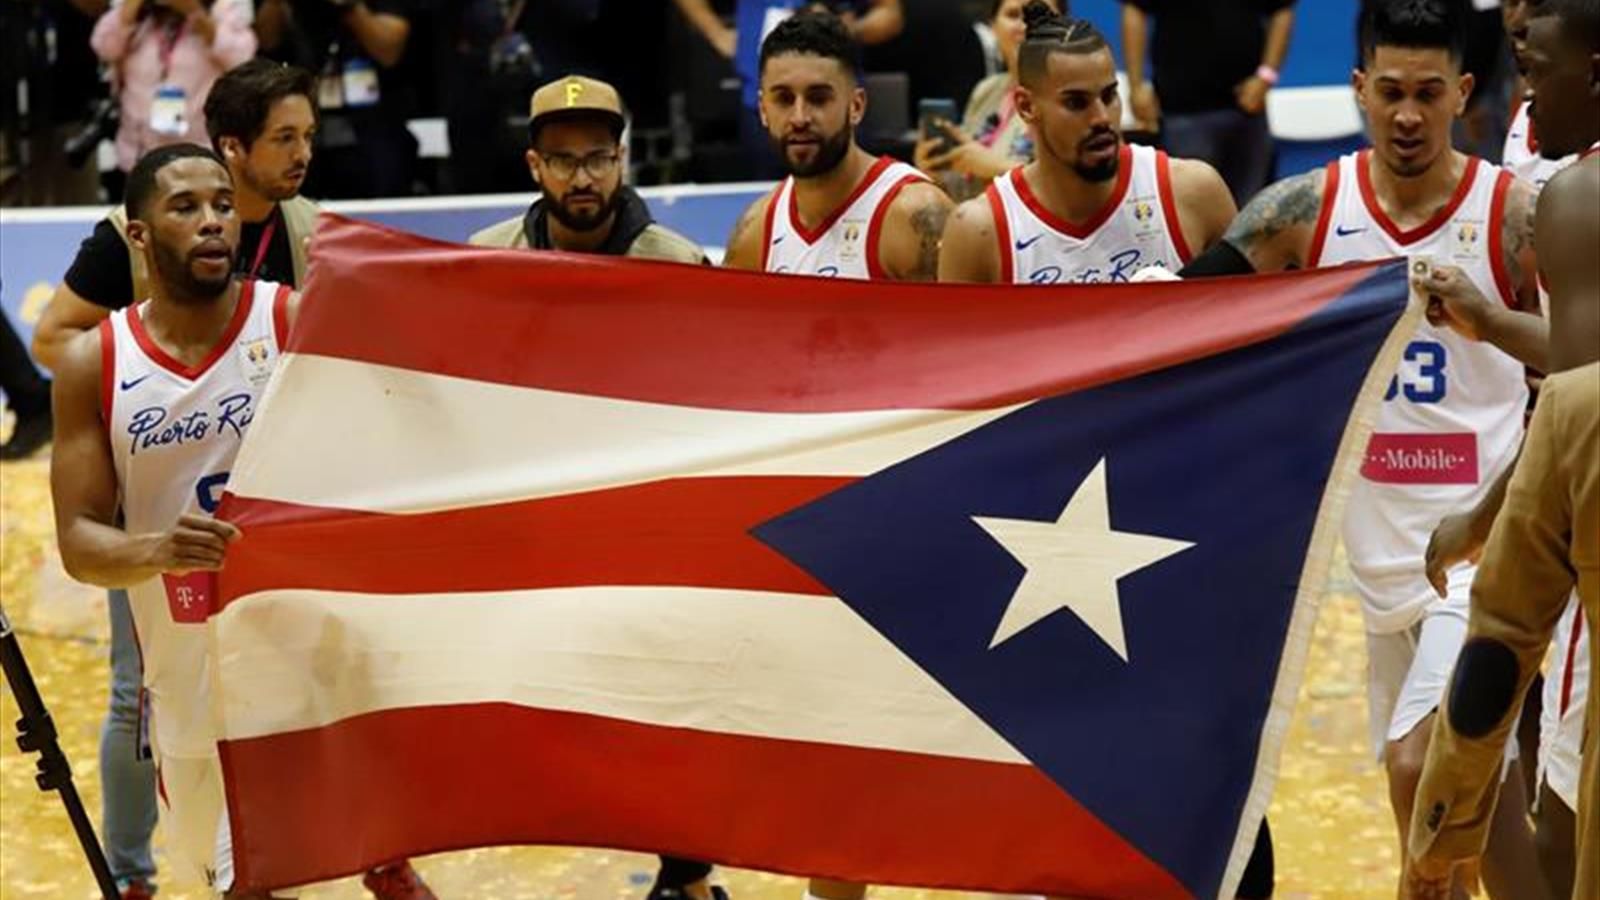 Puerto Rico clasifica al Mundial de Baloncesto China 2019 tras derrotar a Uruguay